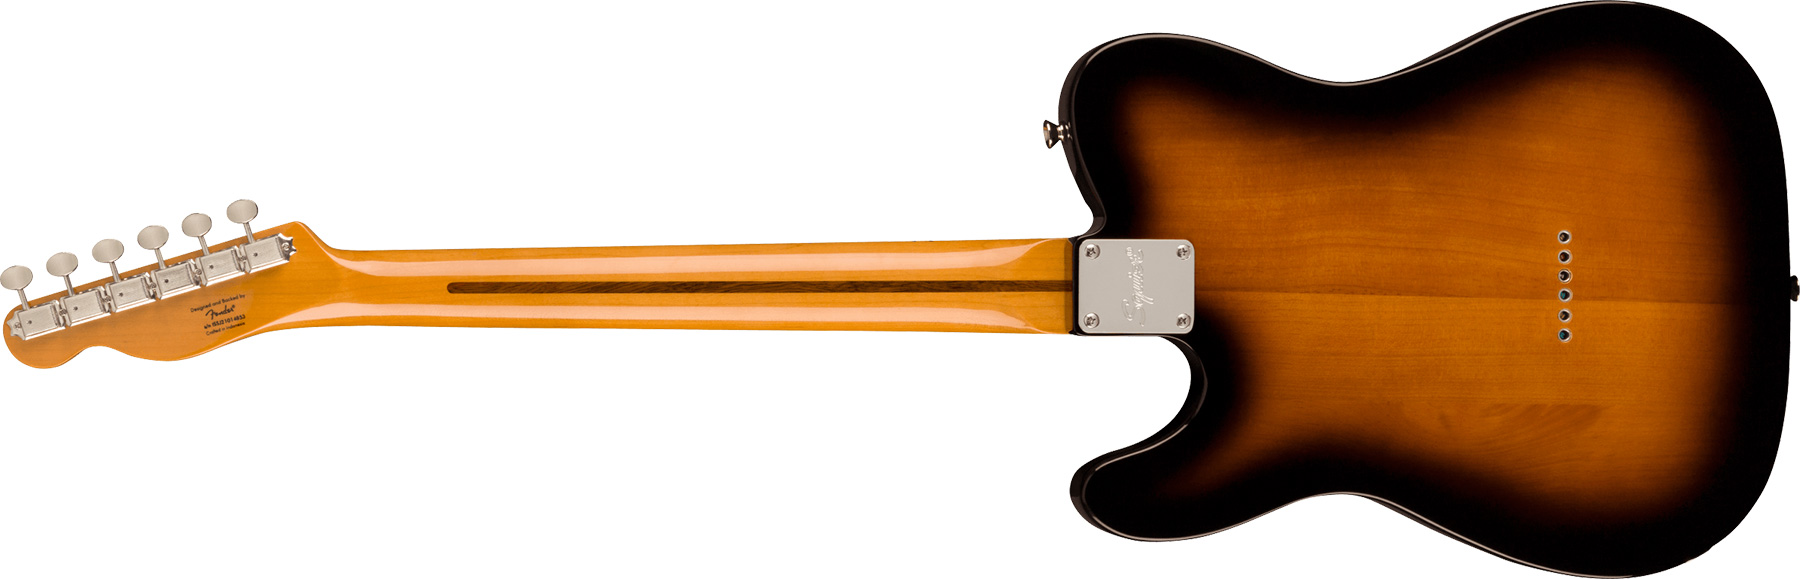 Squier Tele '50s Parchment Pickguard Classic Vibe Fsr 2s Ht Mn - 2-color Sunburst - Televorm elektrische gitaar - Variation 1